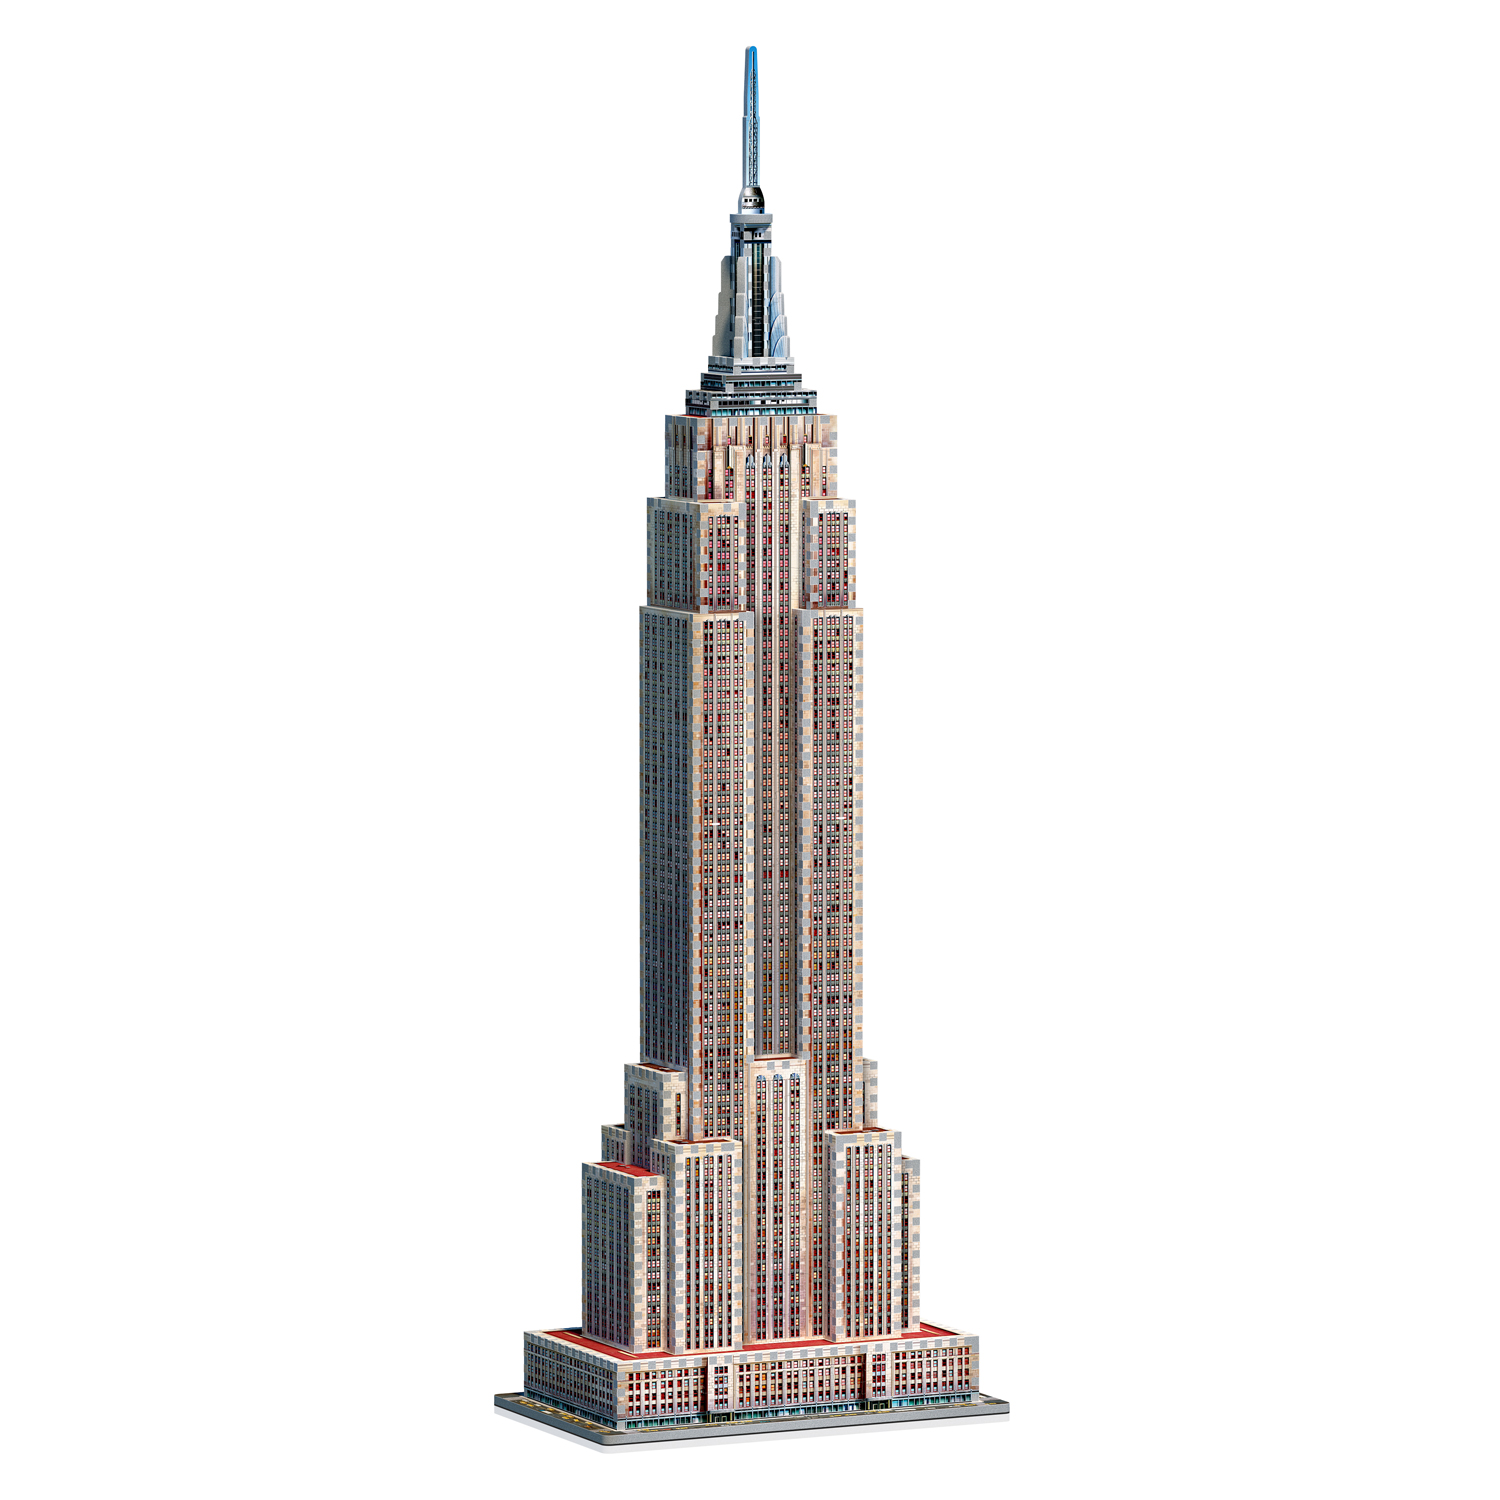 3D Puzzle Puzzel Bauwerk Spielzeug Empire State Building CubicHappy Mini 